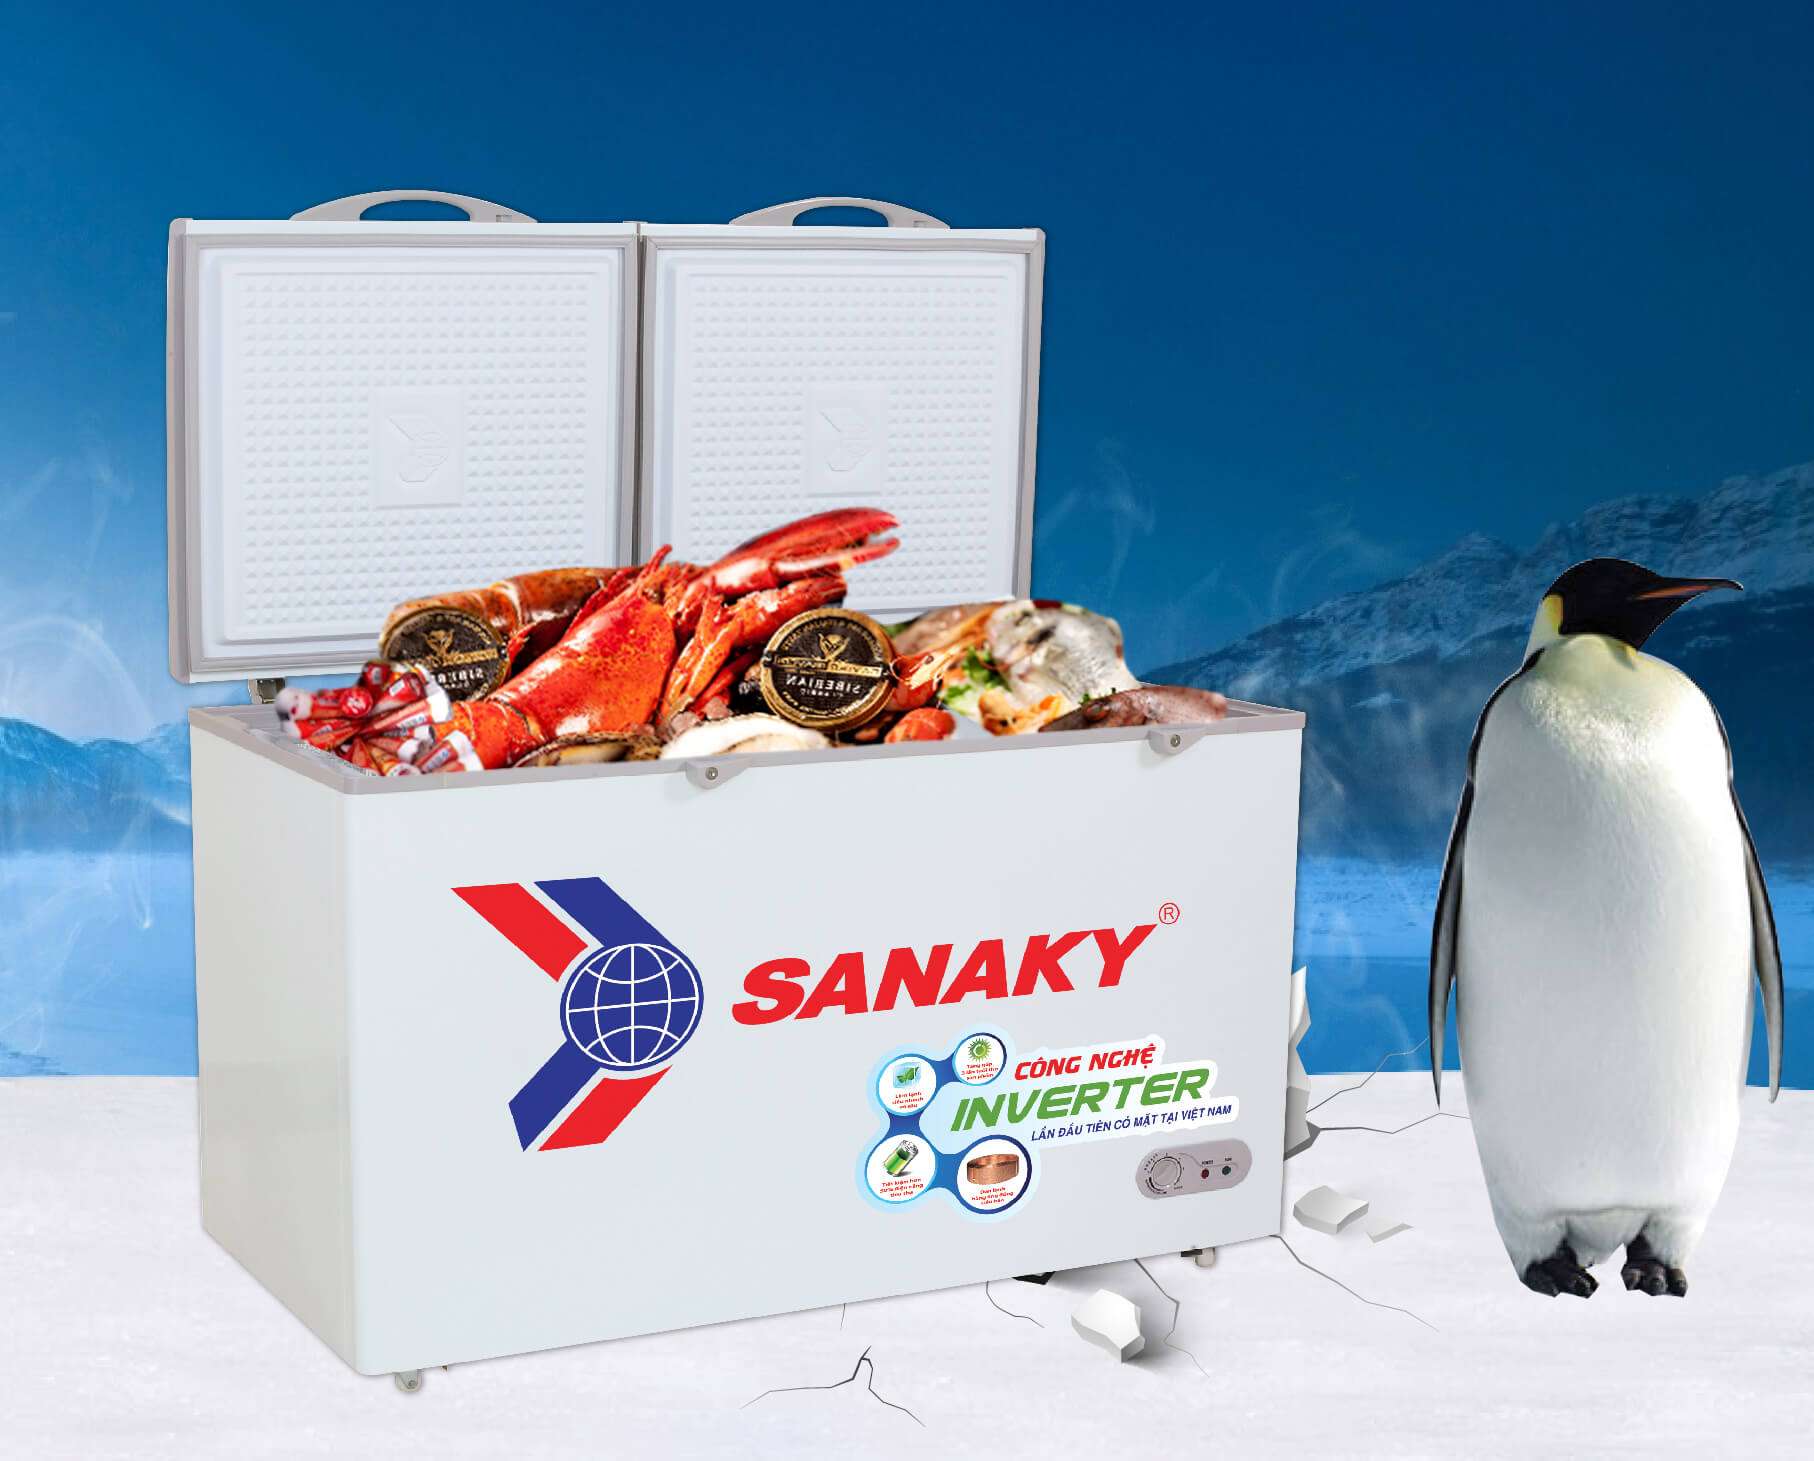 Tủ đông Sanaky giá bao nhiêu? Báo giá tủ đông Sanaky mới nhất